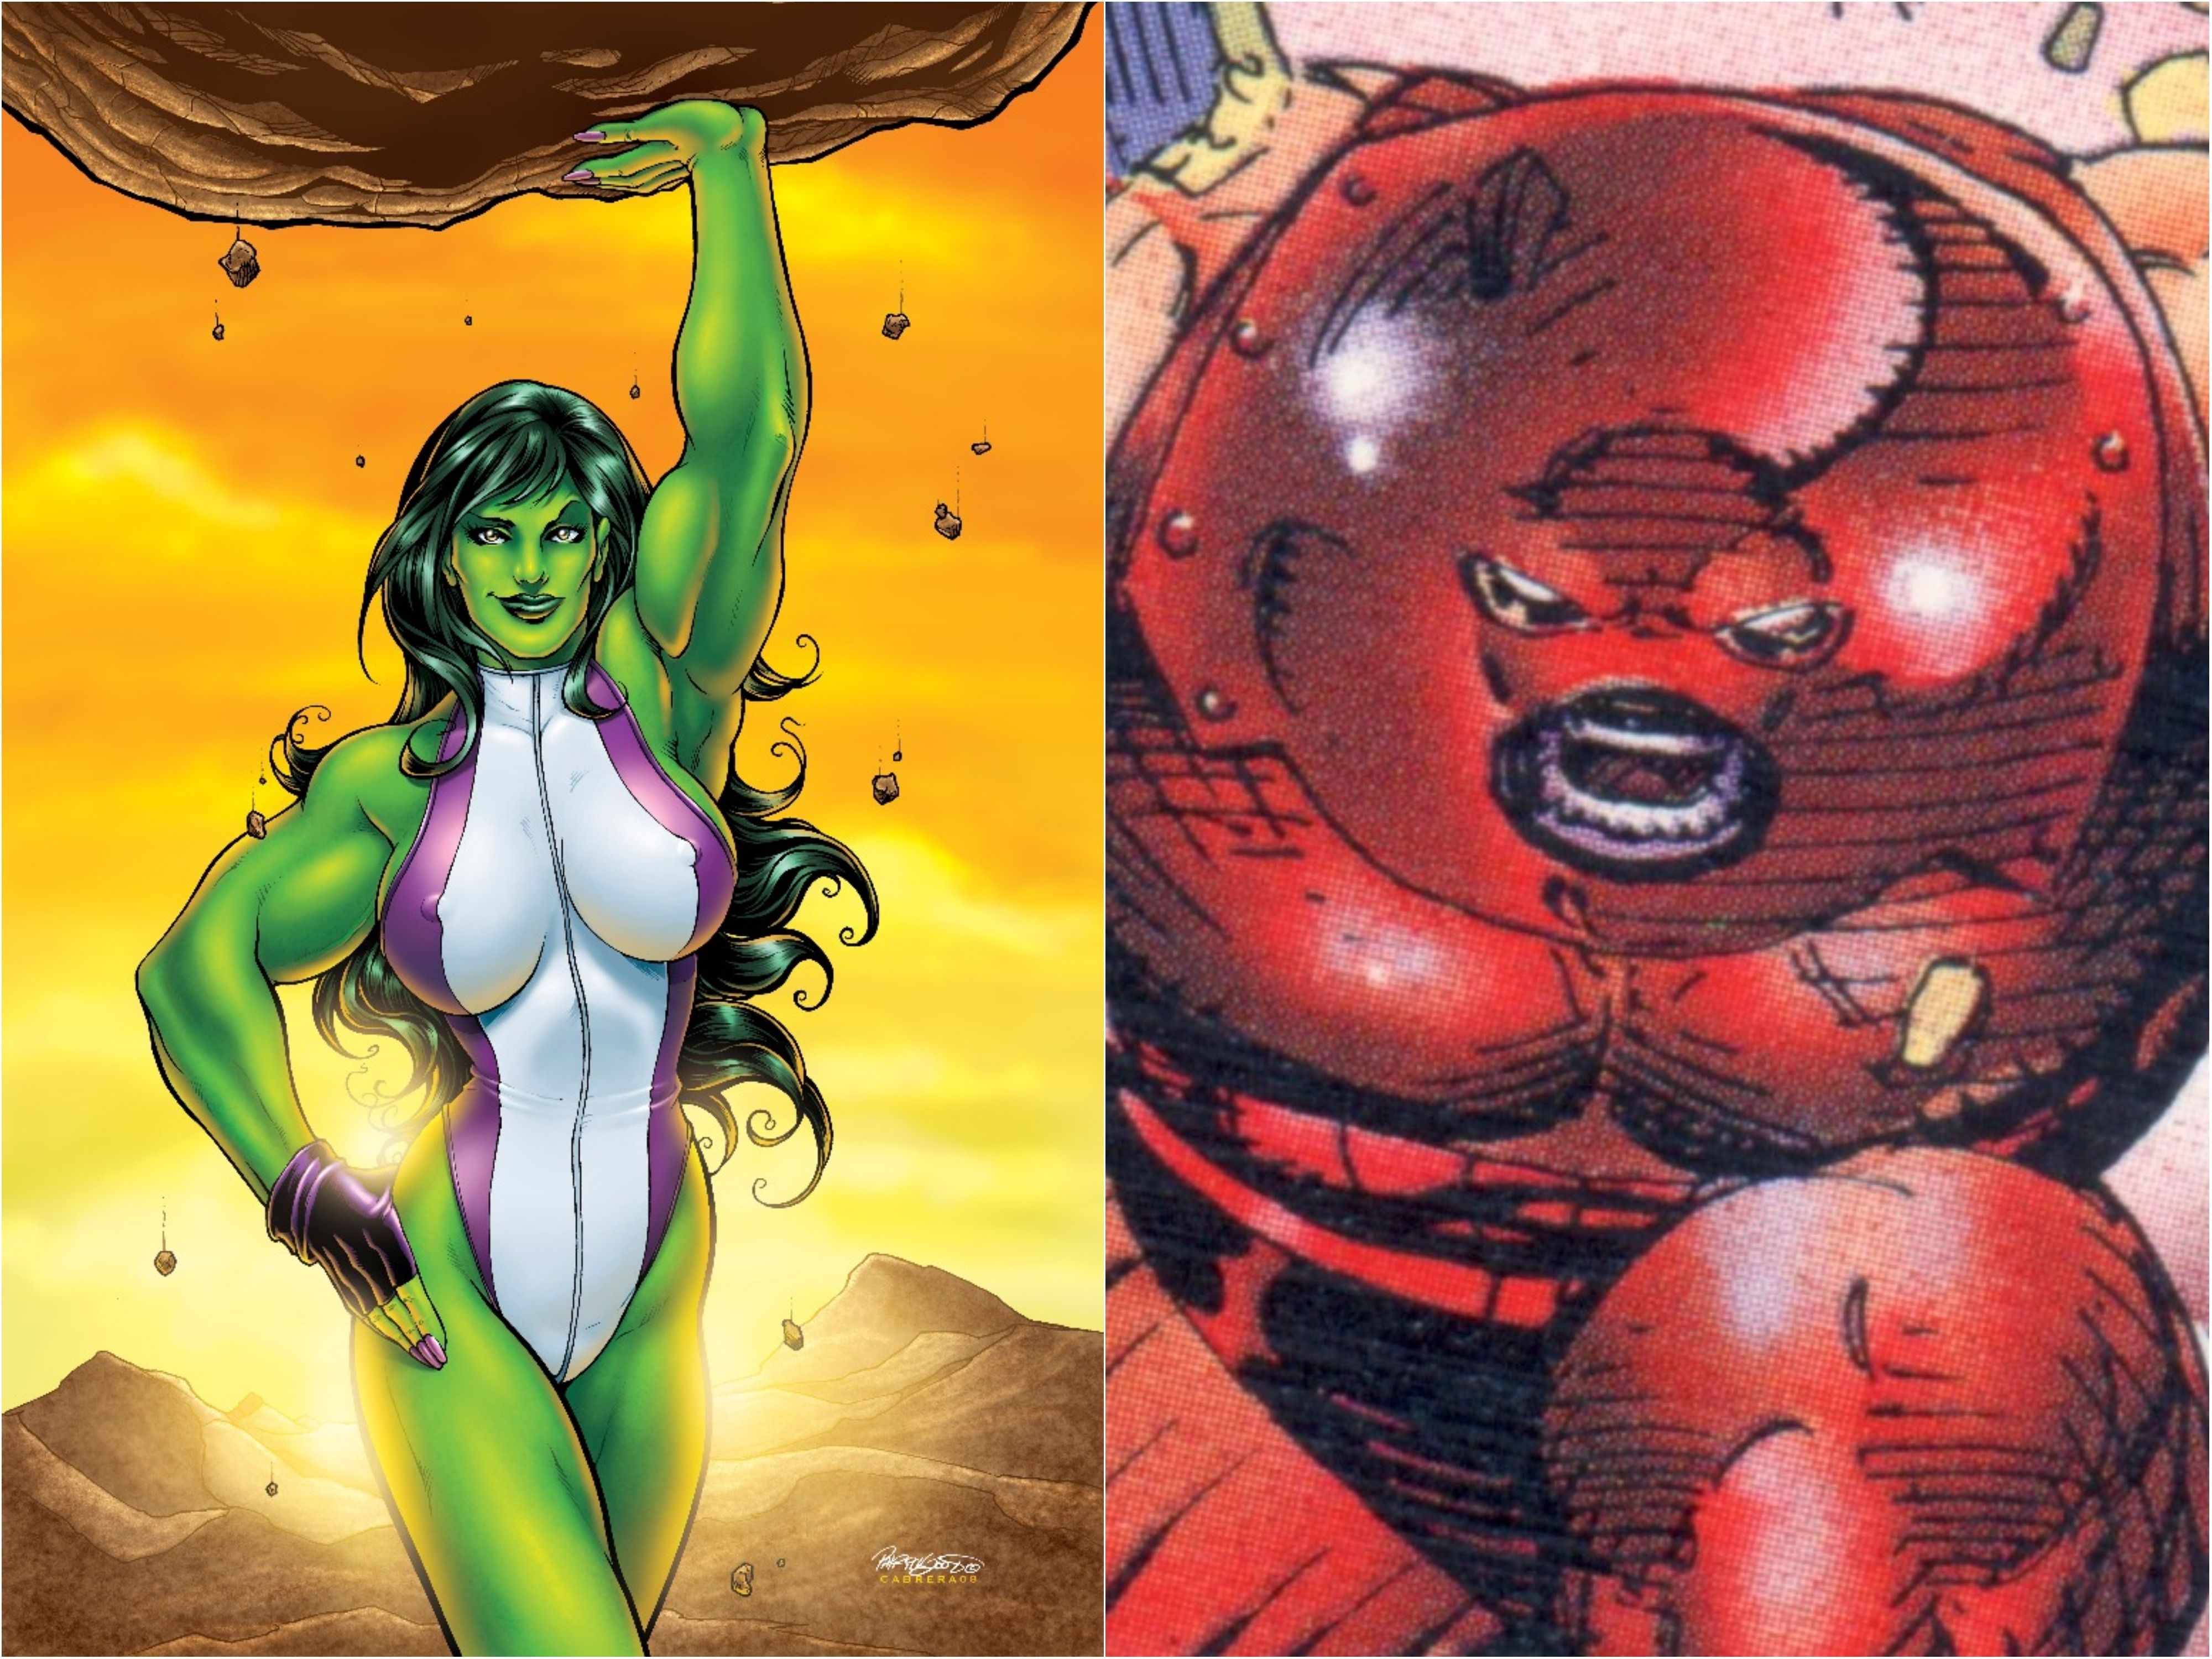 She-Hulk and Juggernaut